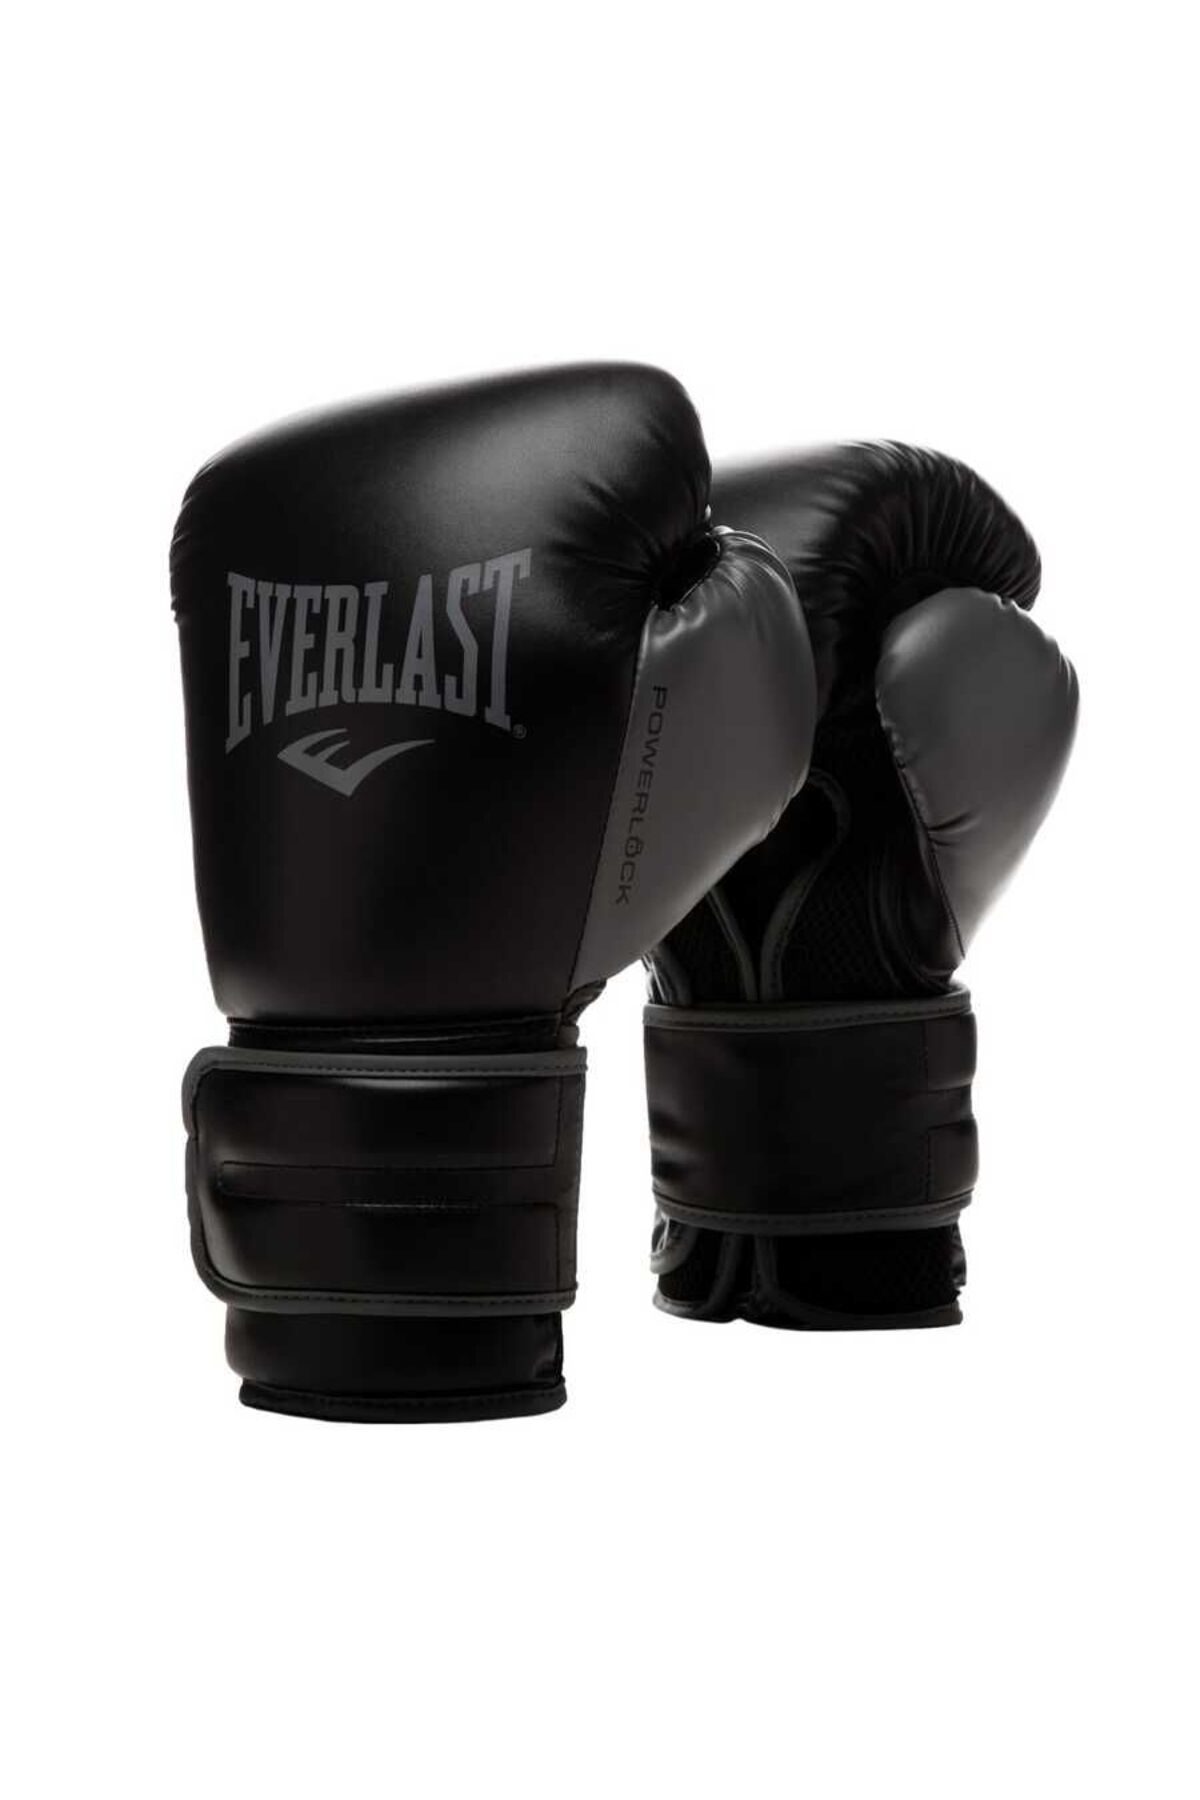 Everlast Powerlock 2 Hook&loop 12oz Training Gloves Boks Eldiveni 870482-70-8